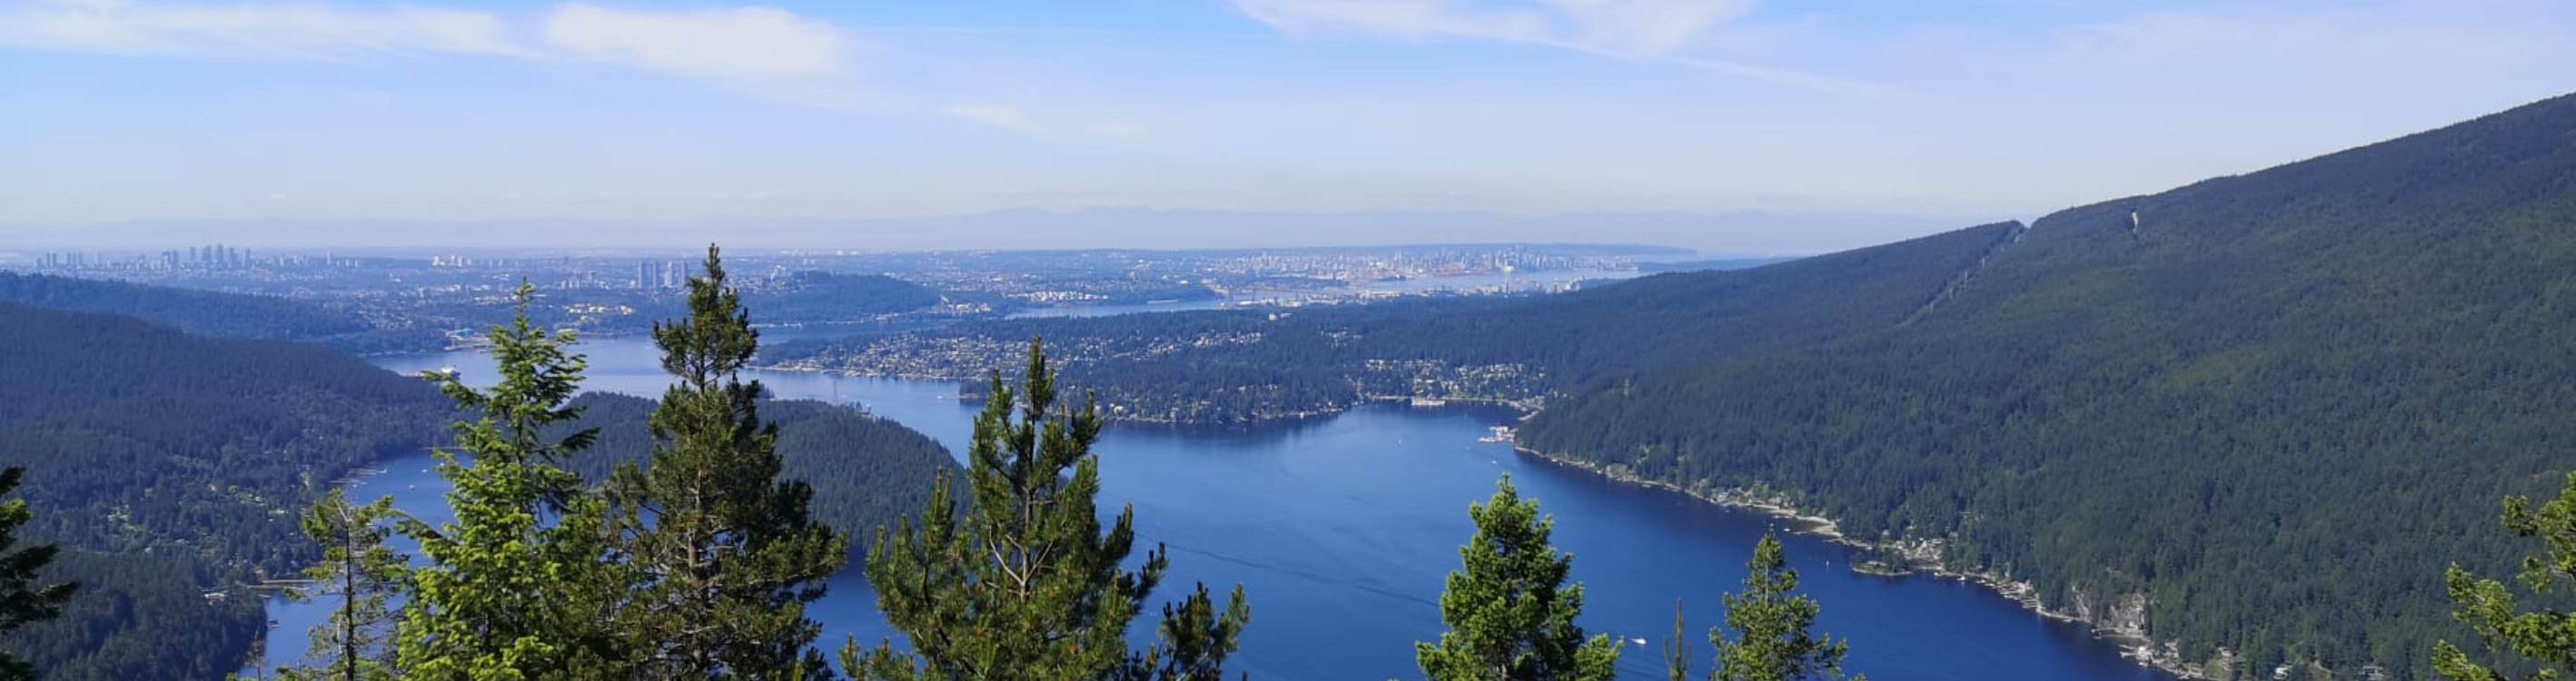 Der Blick vom Diez Vistas Trail auf das Umland von Vancouver.